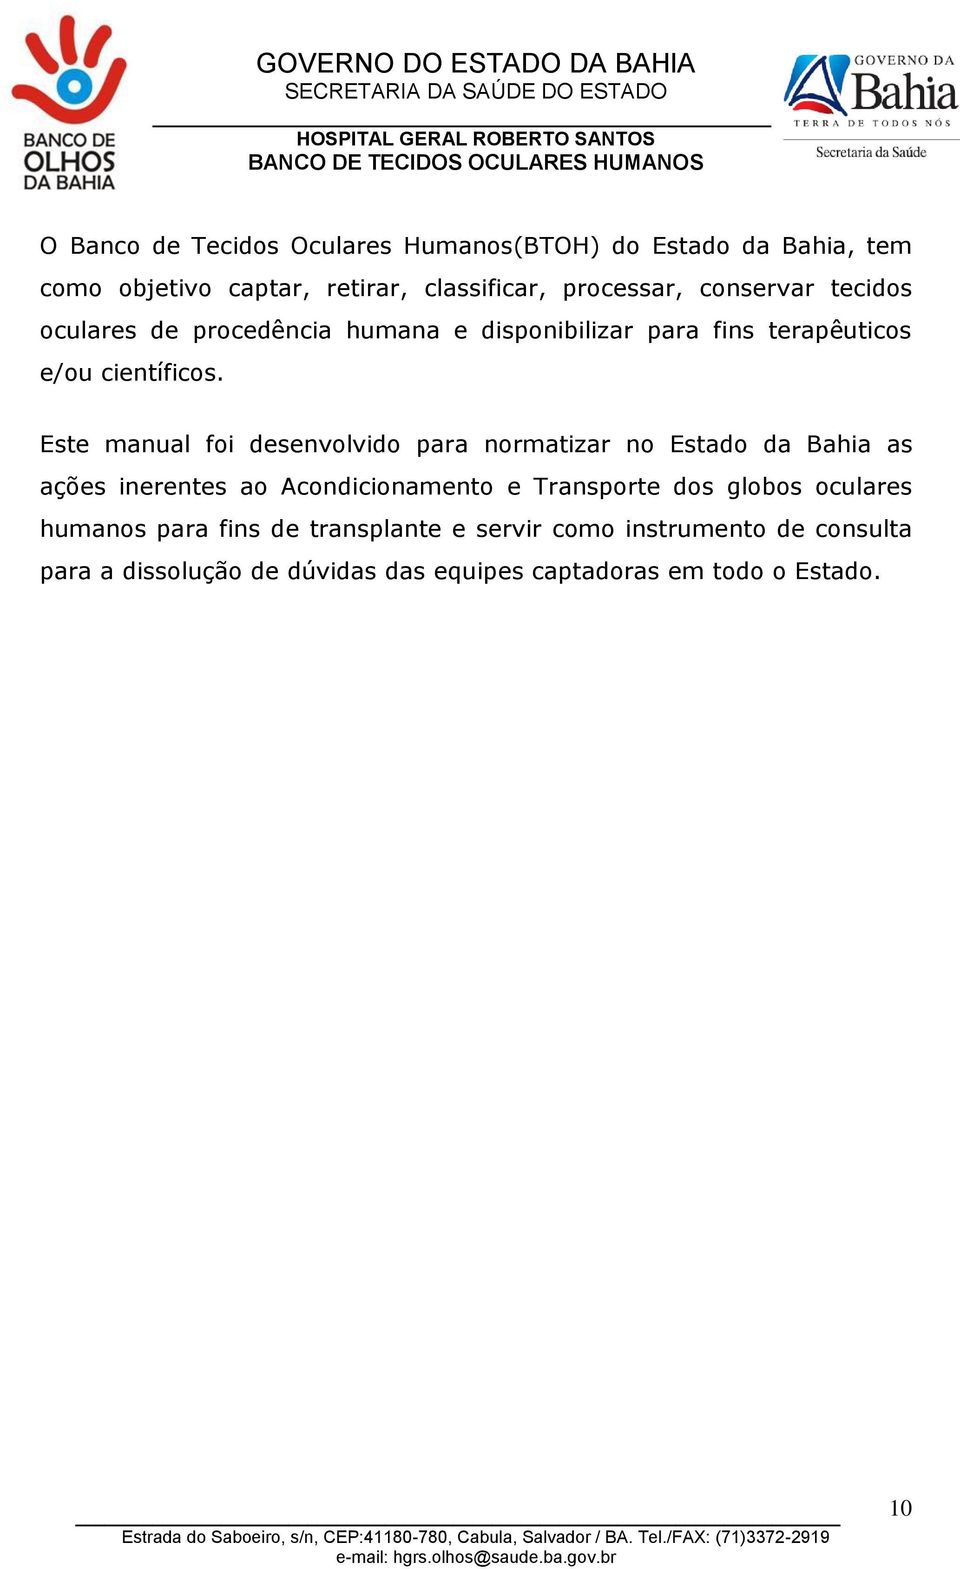 Este manual foi desenvolvido para normatizar no Estado da Bahia as ações inerentes ao Acondicionamento e Transporte dos globos